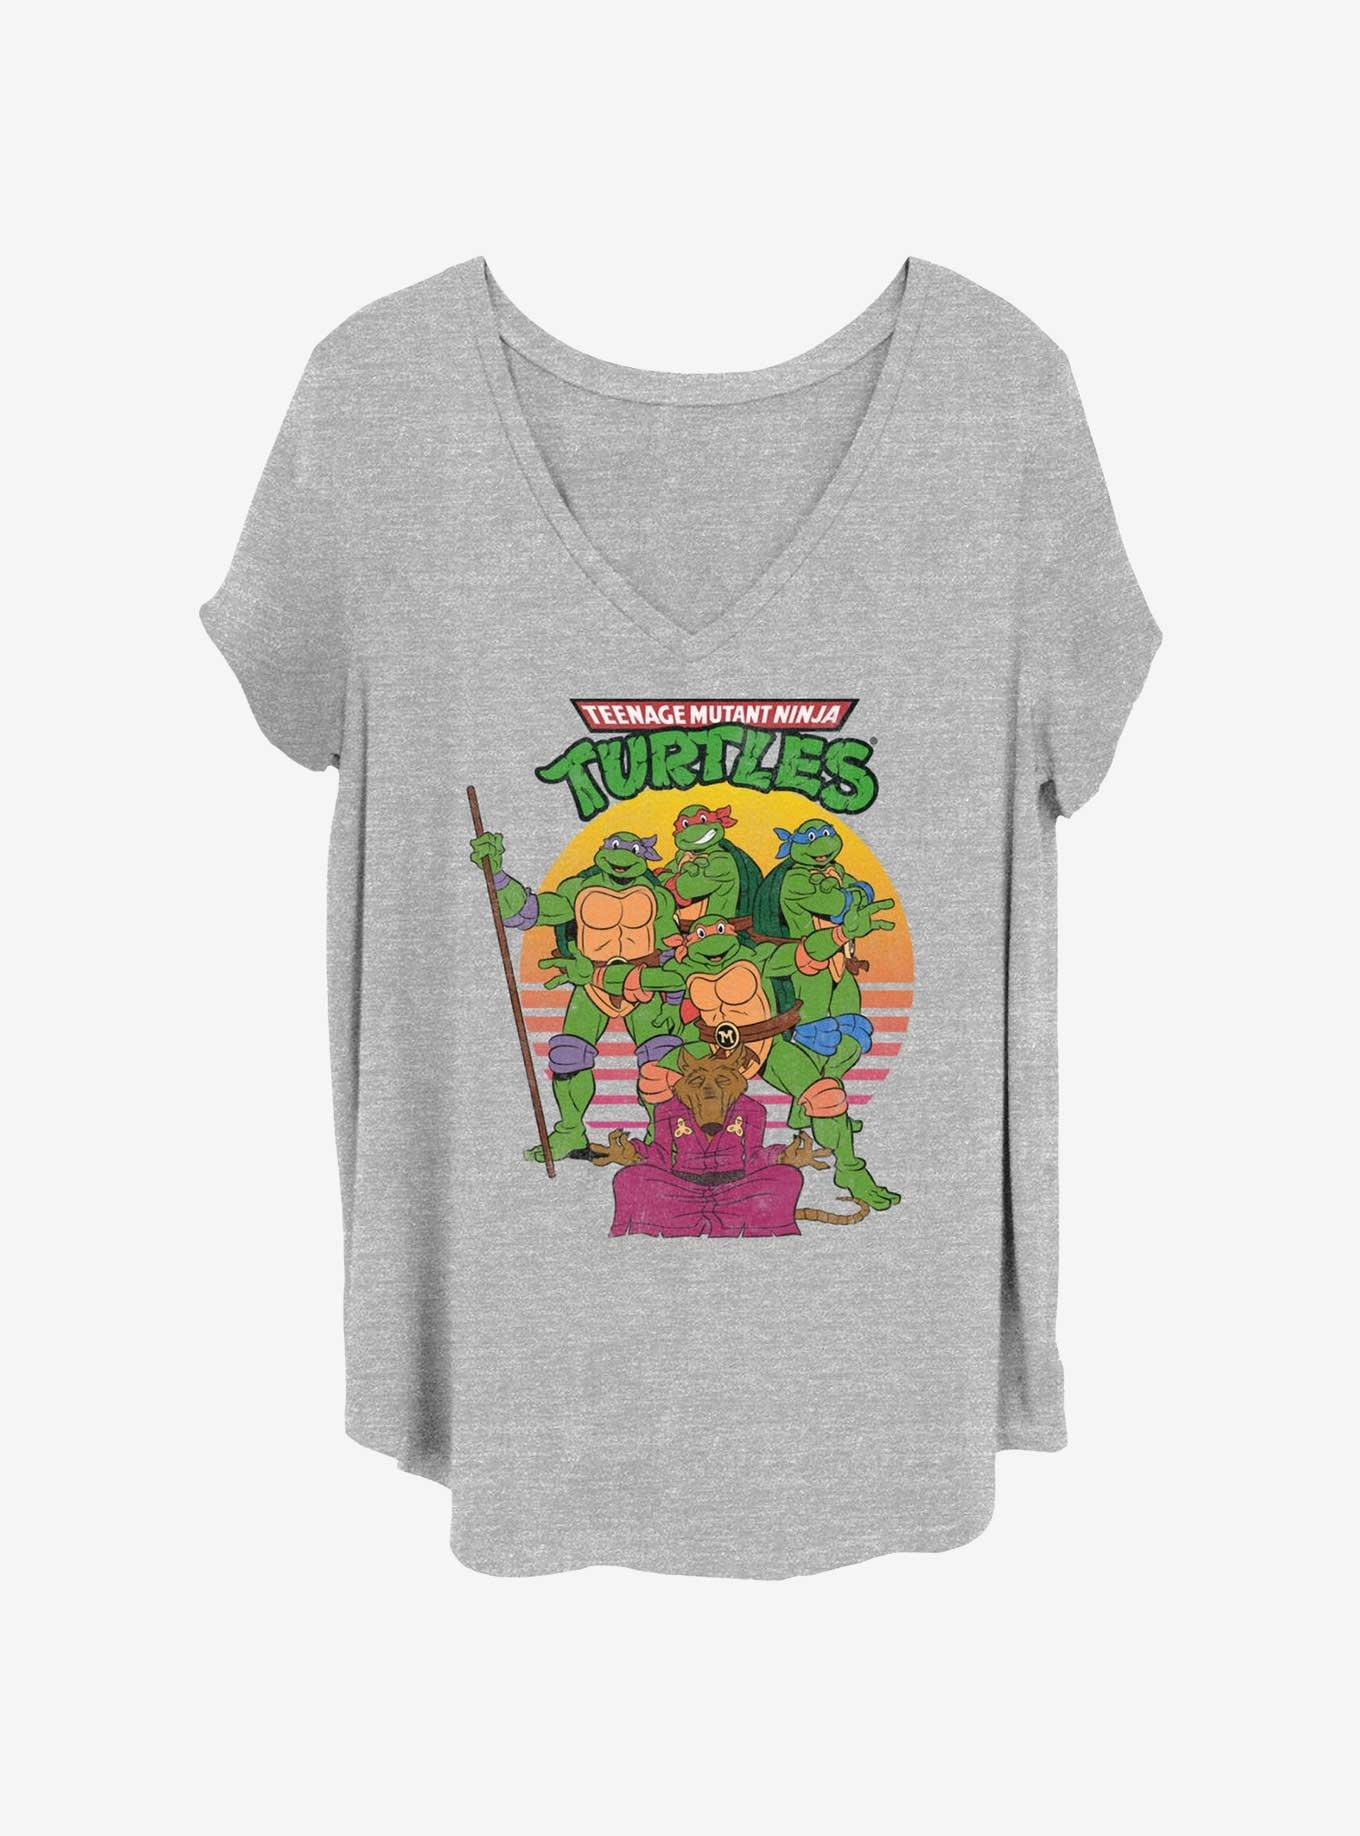 Teenage Mutant Ninja Turtles The Team Girls T-Shirt Plus